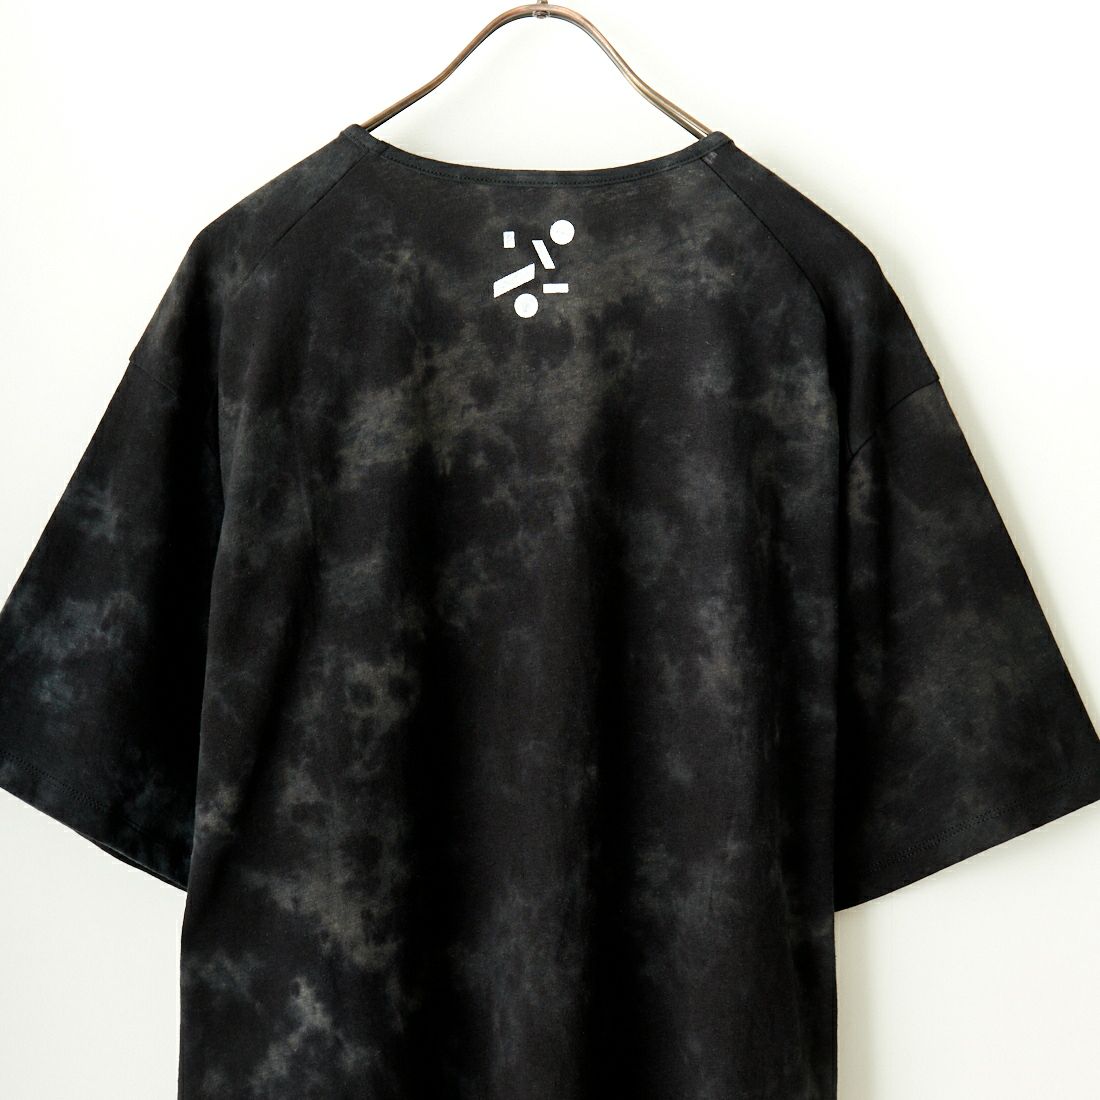 ATA [アタ] ヘンプオーガニックコットン Tシャツ [A01-02024] BLACK